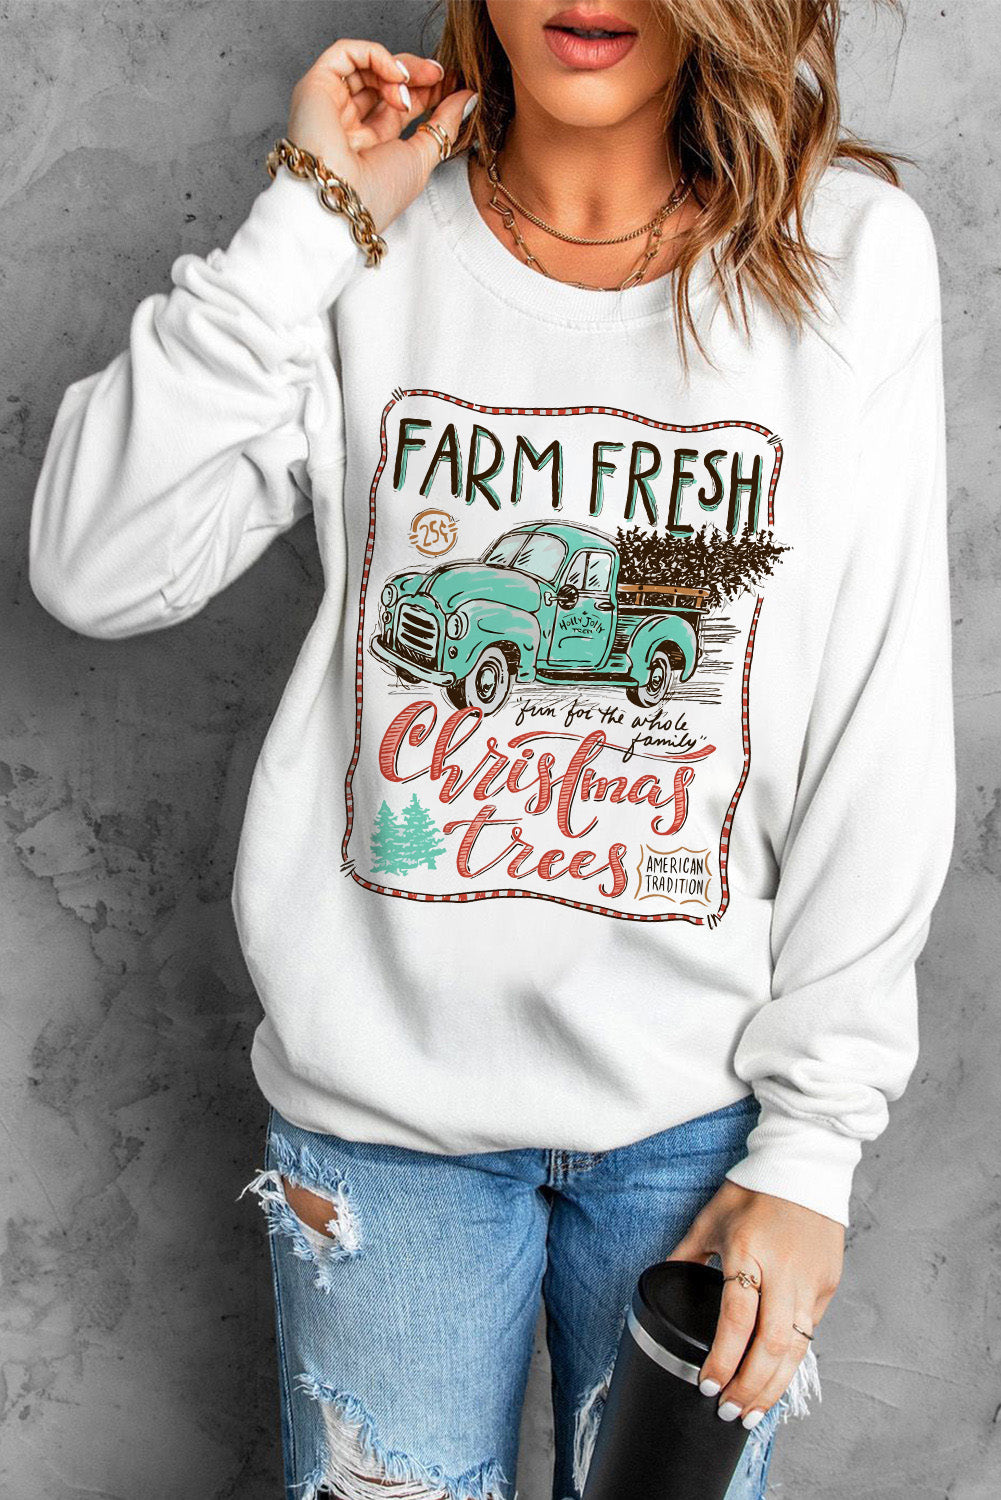 Sweet Christmas Drinks Graphic Sweatshirt